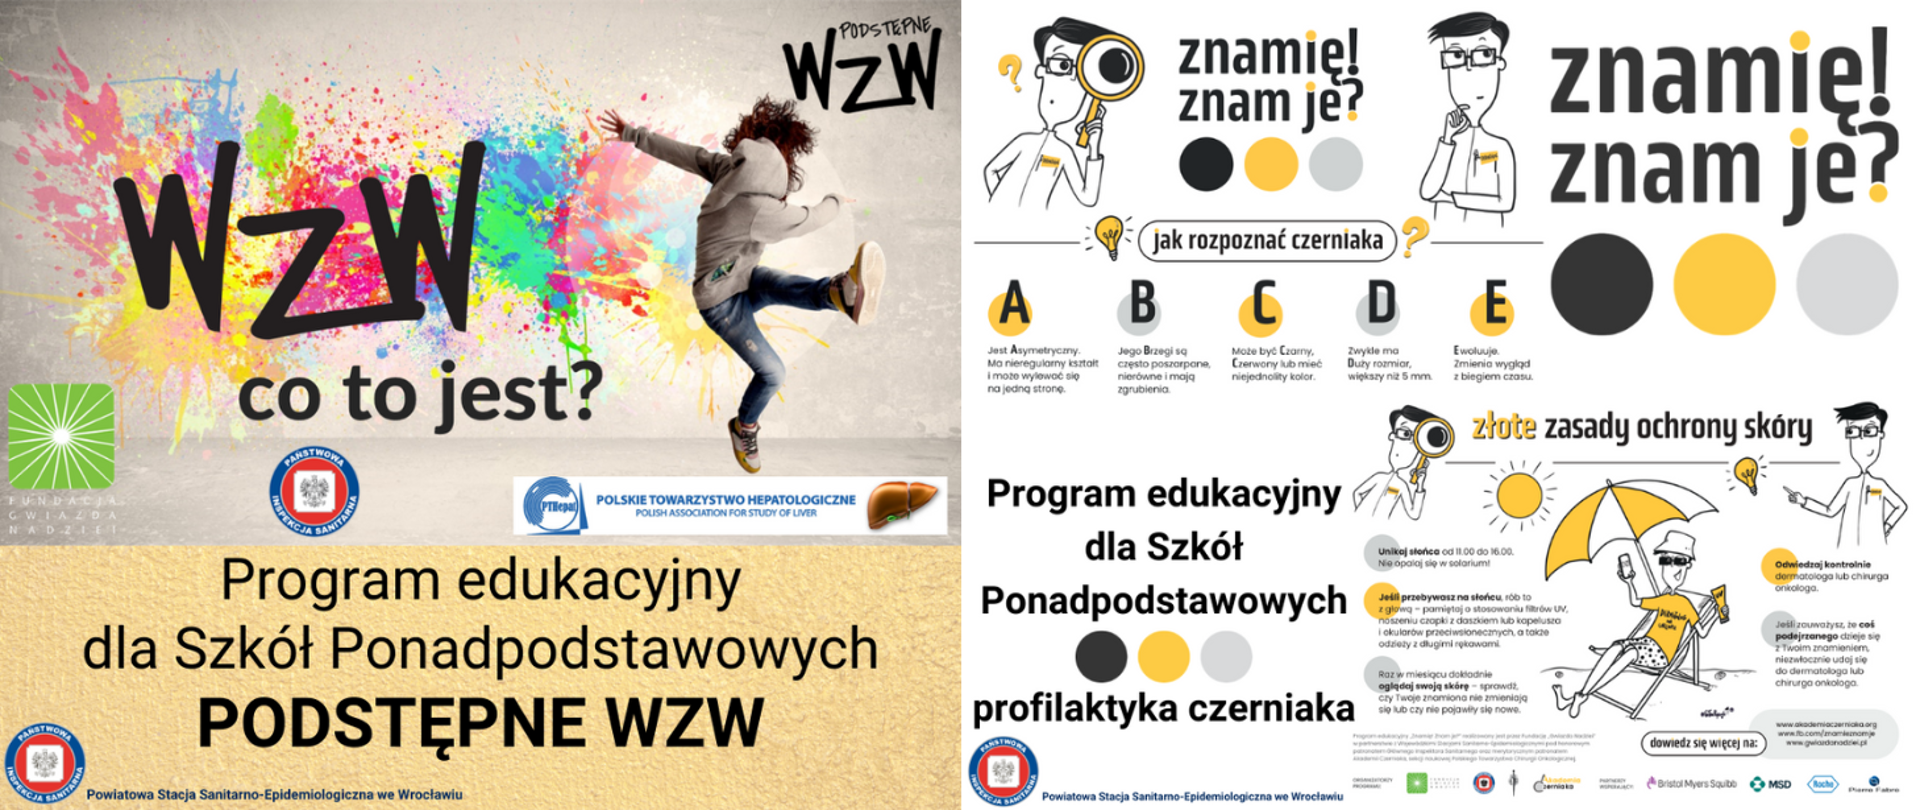 Sklejenie po krótszym boku dwóch postów z mediów społecznościowych PSSE we Wrocławiu. Pierwszy post - program edukacyjny dla szkół ponadpodstawowych "Podstępne WZW" - beżowe tło, zdjęcie młodej osoby w podskoku na tle ściany, na którą rozlane są barwne kleksy różnokolorowych fabr, napis WZW co to jest? Drugi post - program edukacyjny dla szkół ponadpodstawowych "Znamię! Znam je?" dot. profilaktyki czerniaka - na białym tle kreskówkowe postacie lekarza i osoby na plaży (pod parasolem, w okularach przeciwsłonecznych z czapką na głowie), treści dot. zapobiegania rozwojowi czerniaka. 